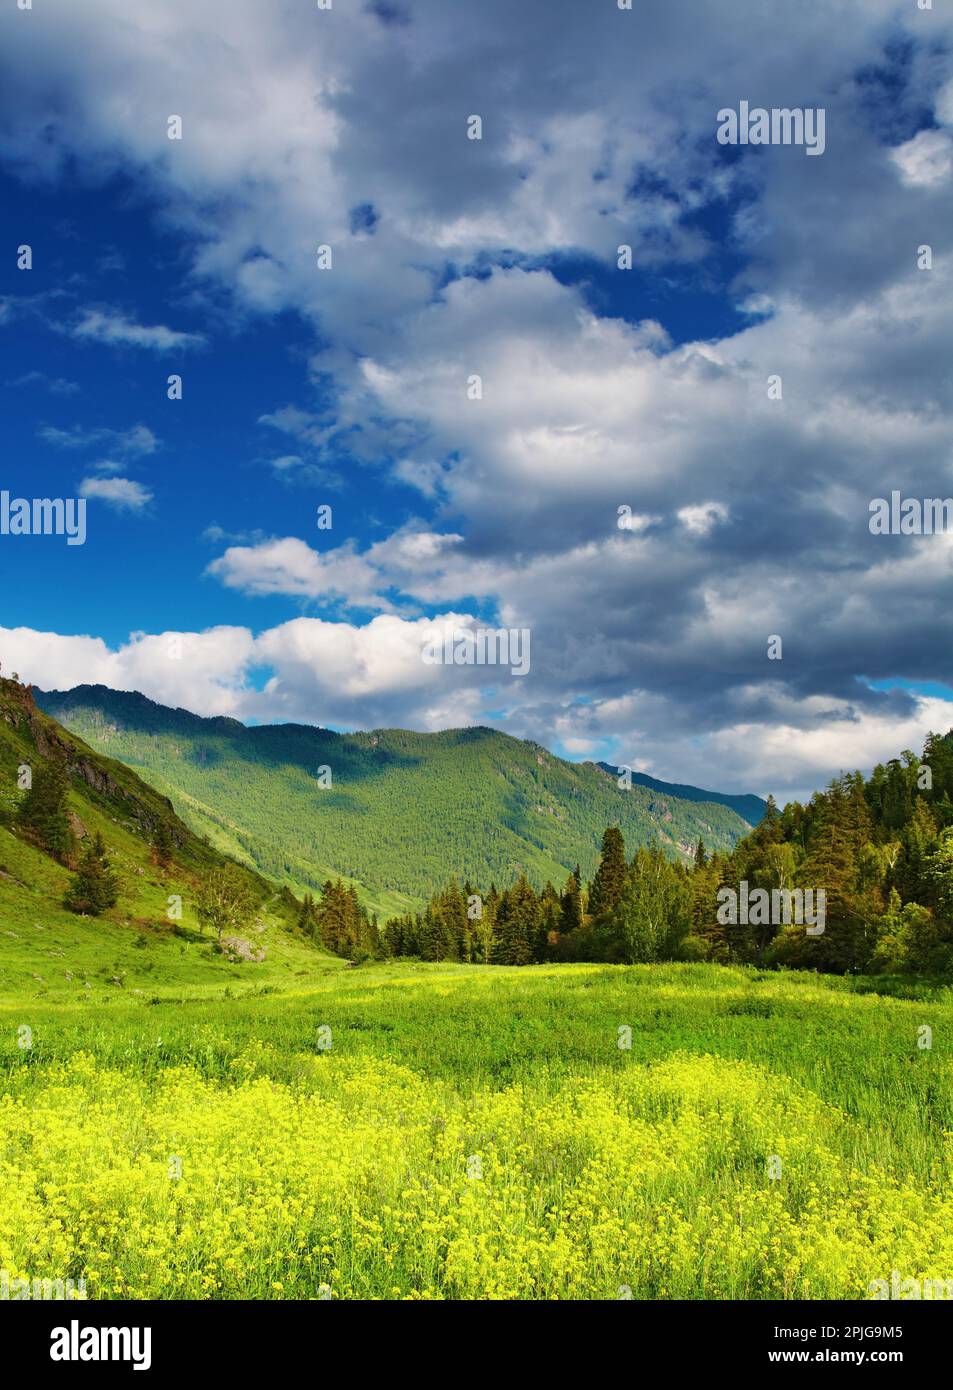 Paysage de montagne avec glades en fleurs et ciel nuageux Banque D'Images